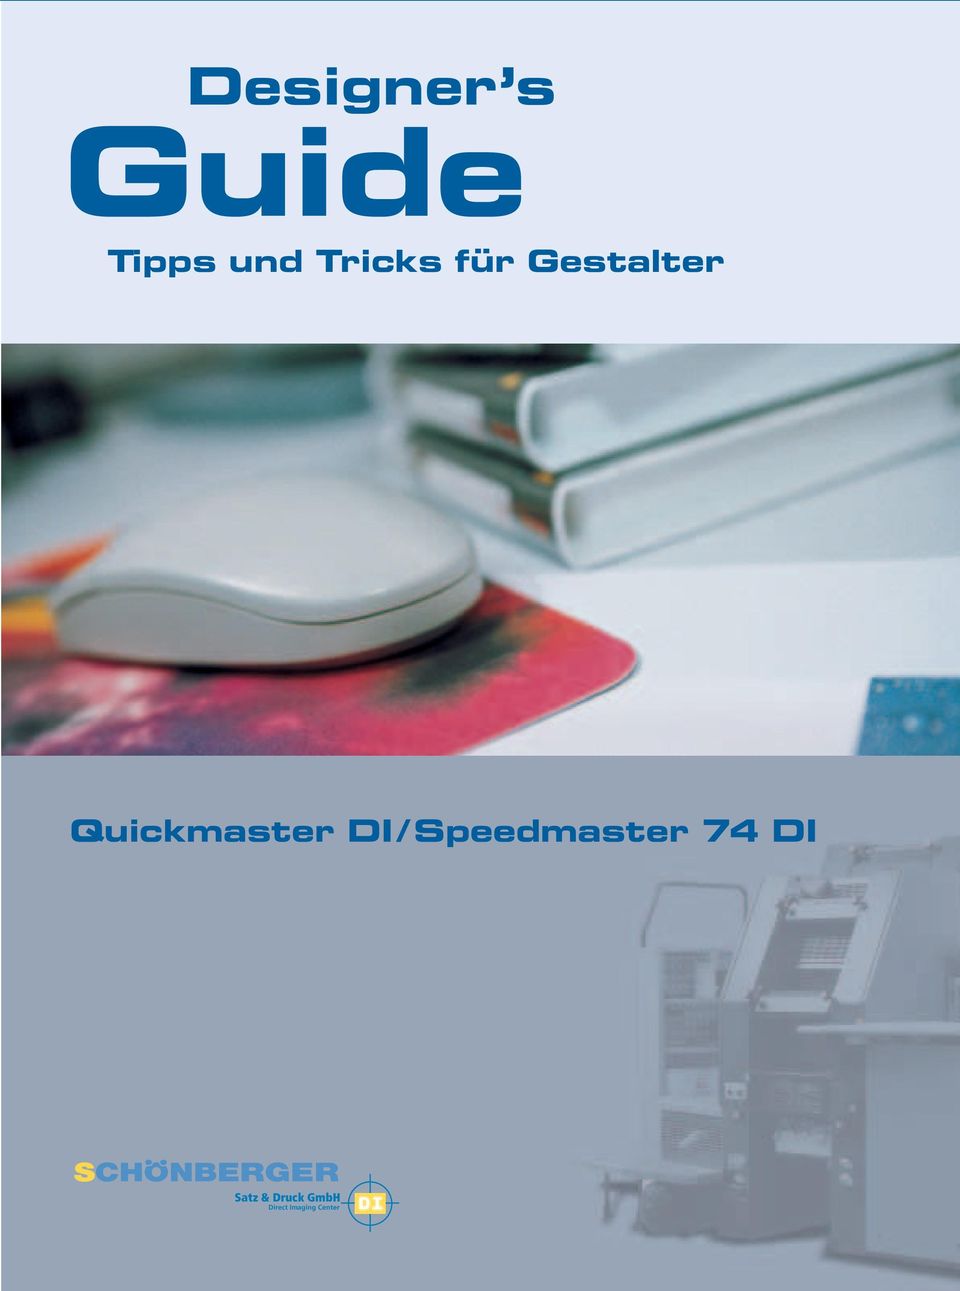 Quickmaster DI / Speedmaster